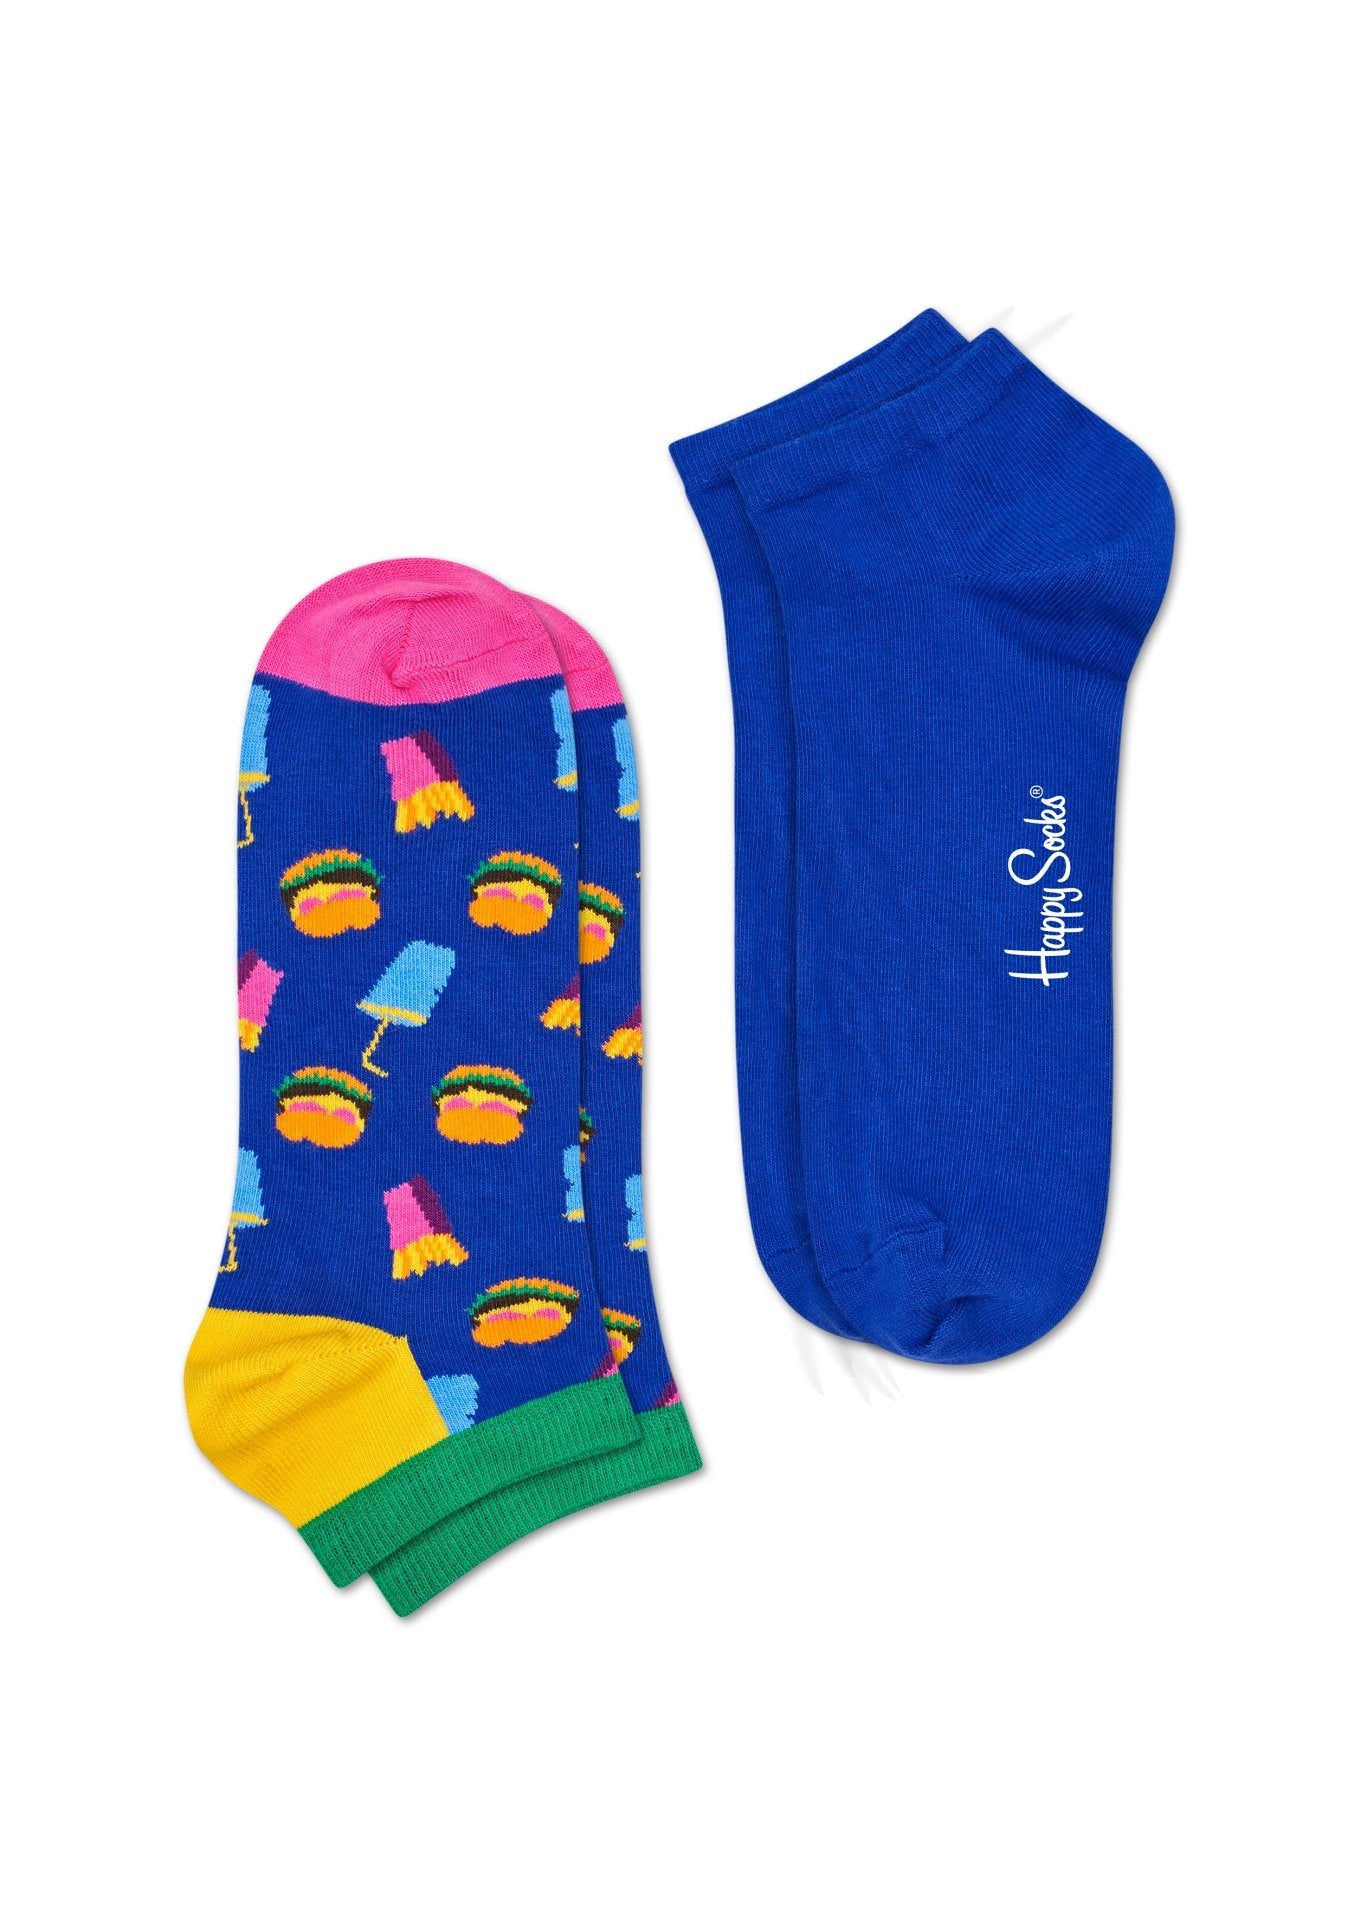 Nízke ponožky Happy Socks, vzor Hamburger (modré) - 2 páry